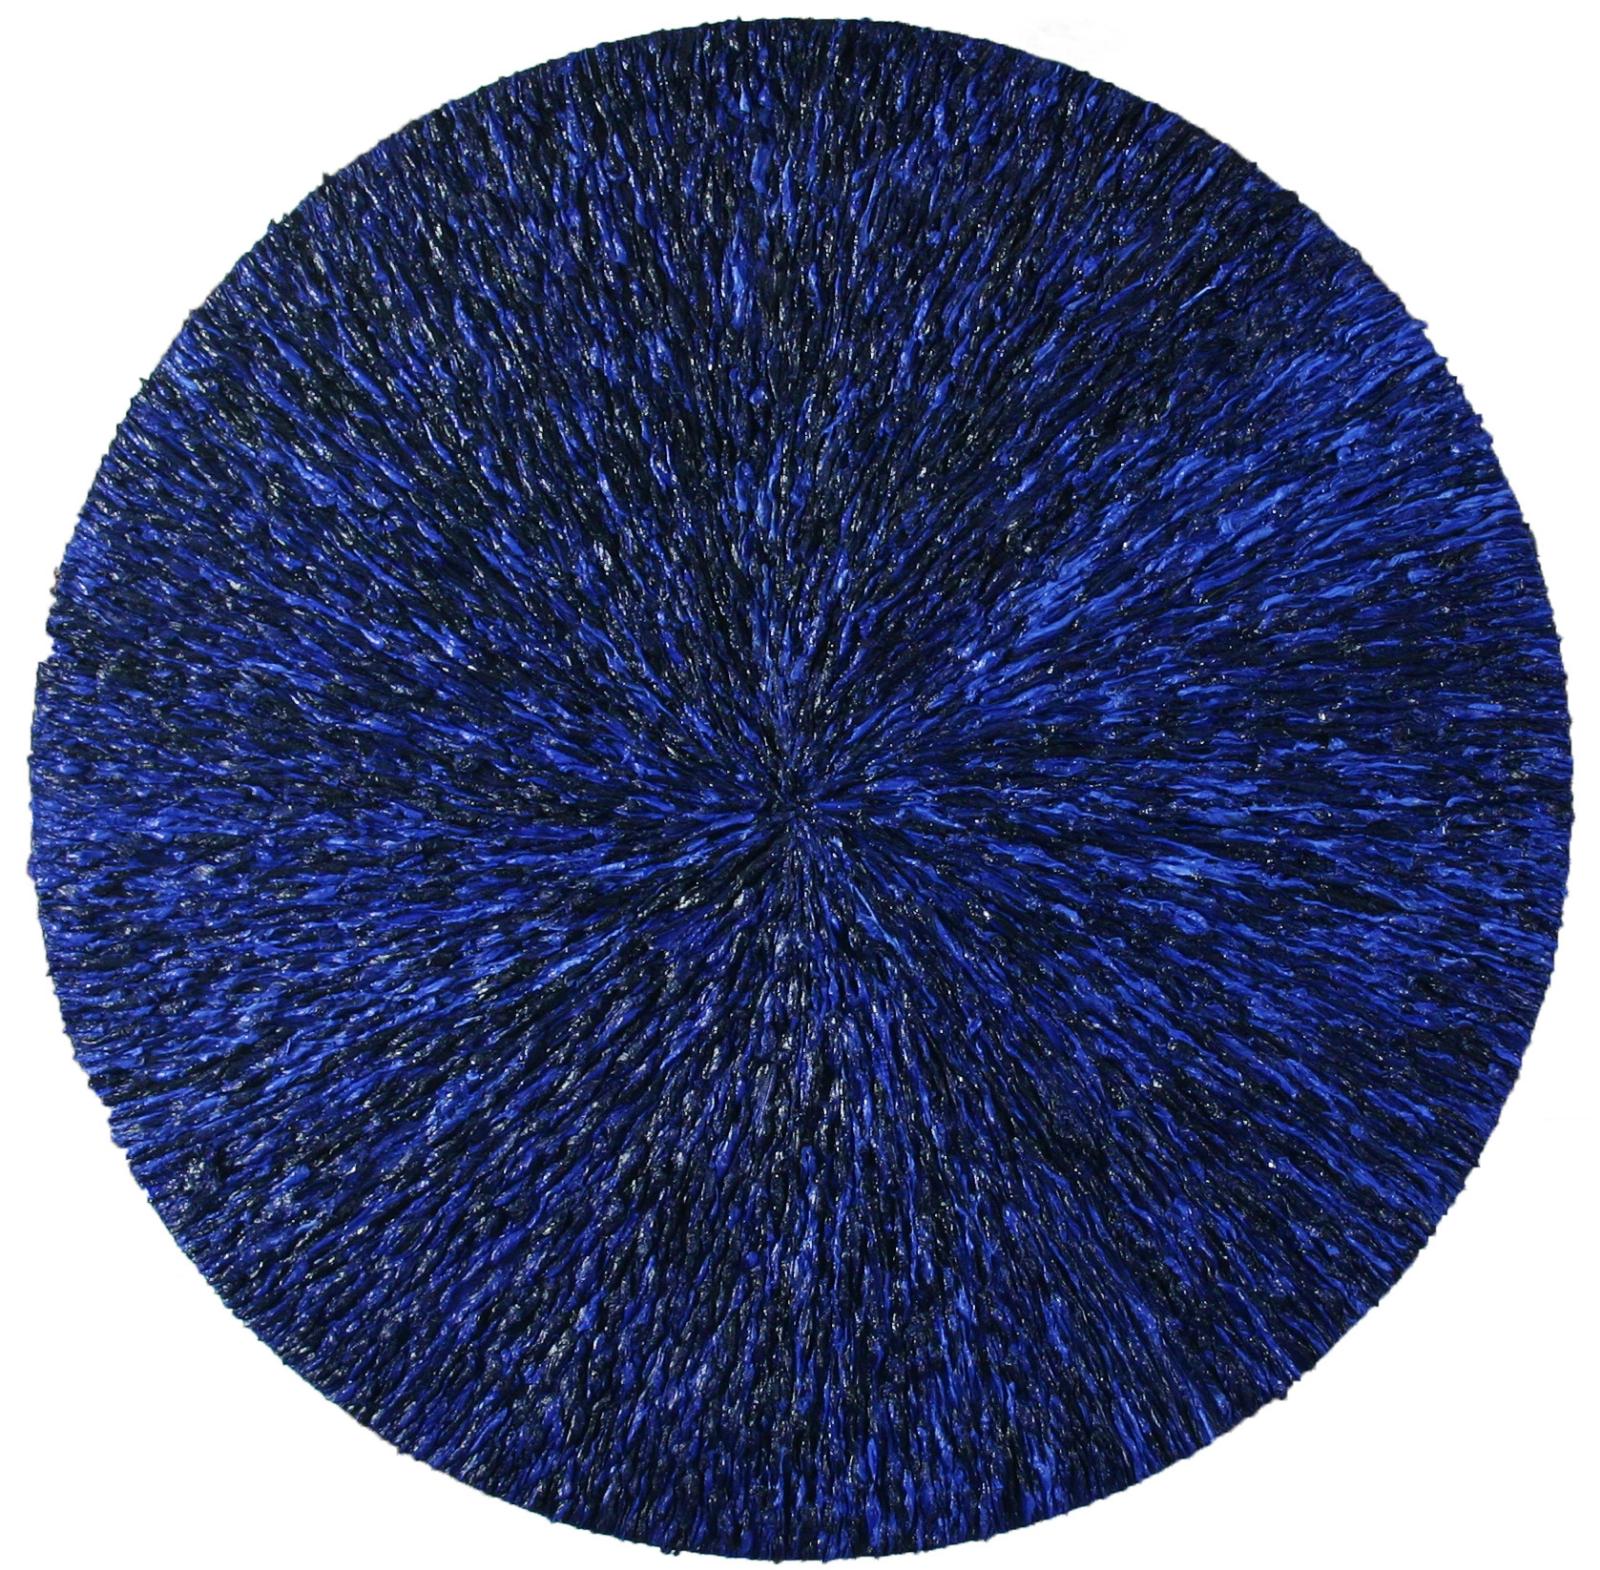 Harry Meyer, LUX, 2019, Durchmesser: 77 cm, Preis auf Anfrage, mey010kü